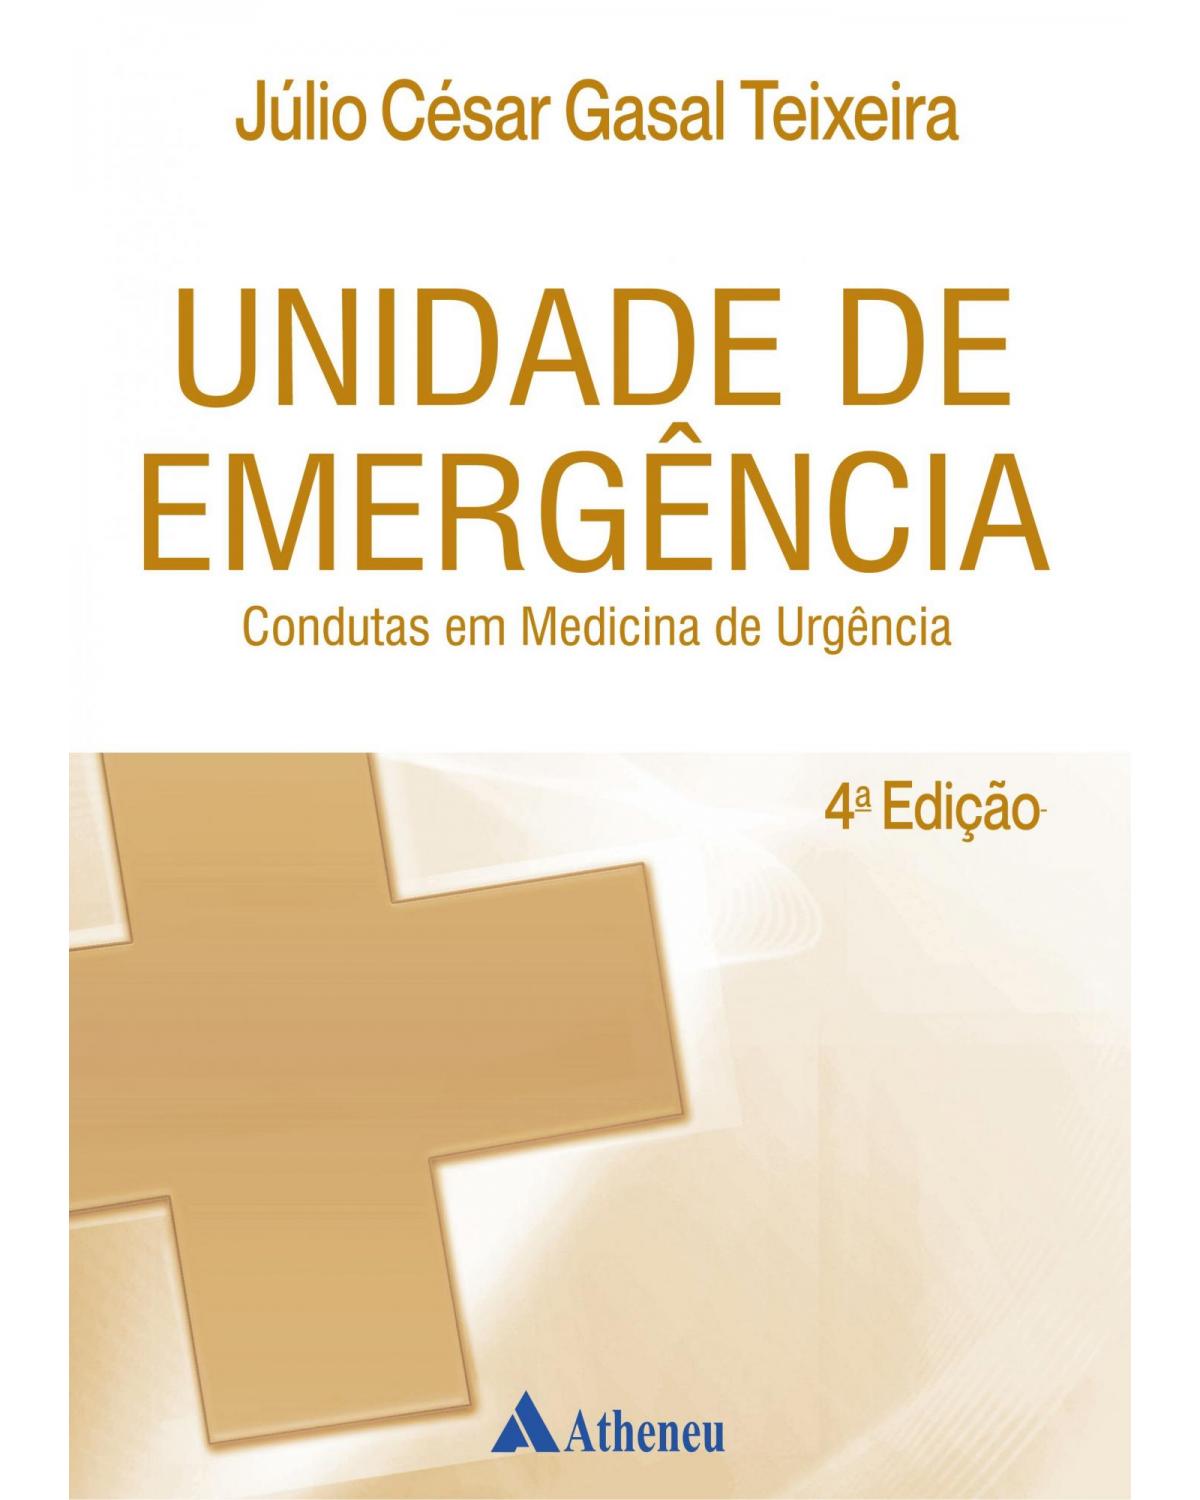 Unidade de emergência - condutas em medicina de urgência - 4ª Edição | 2019